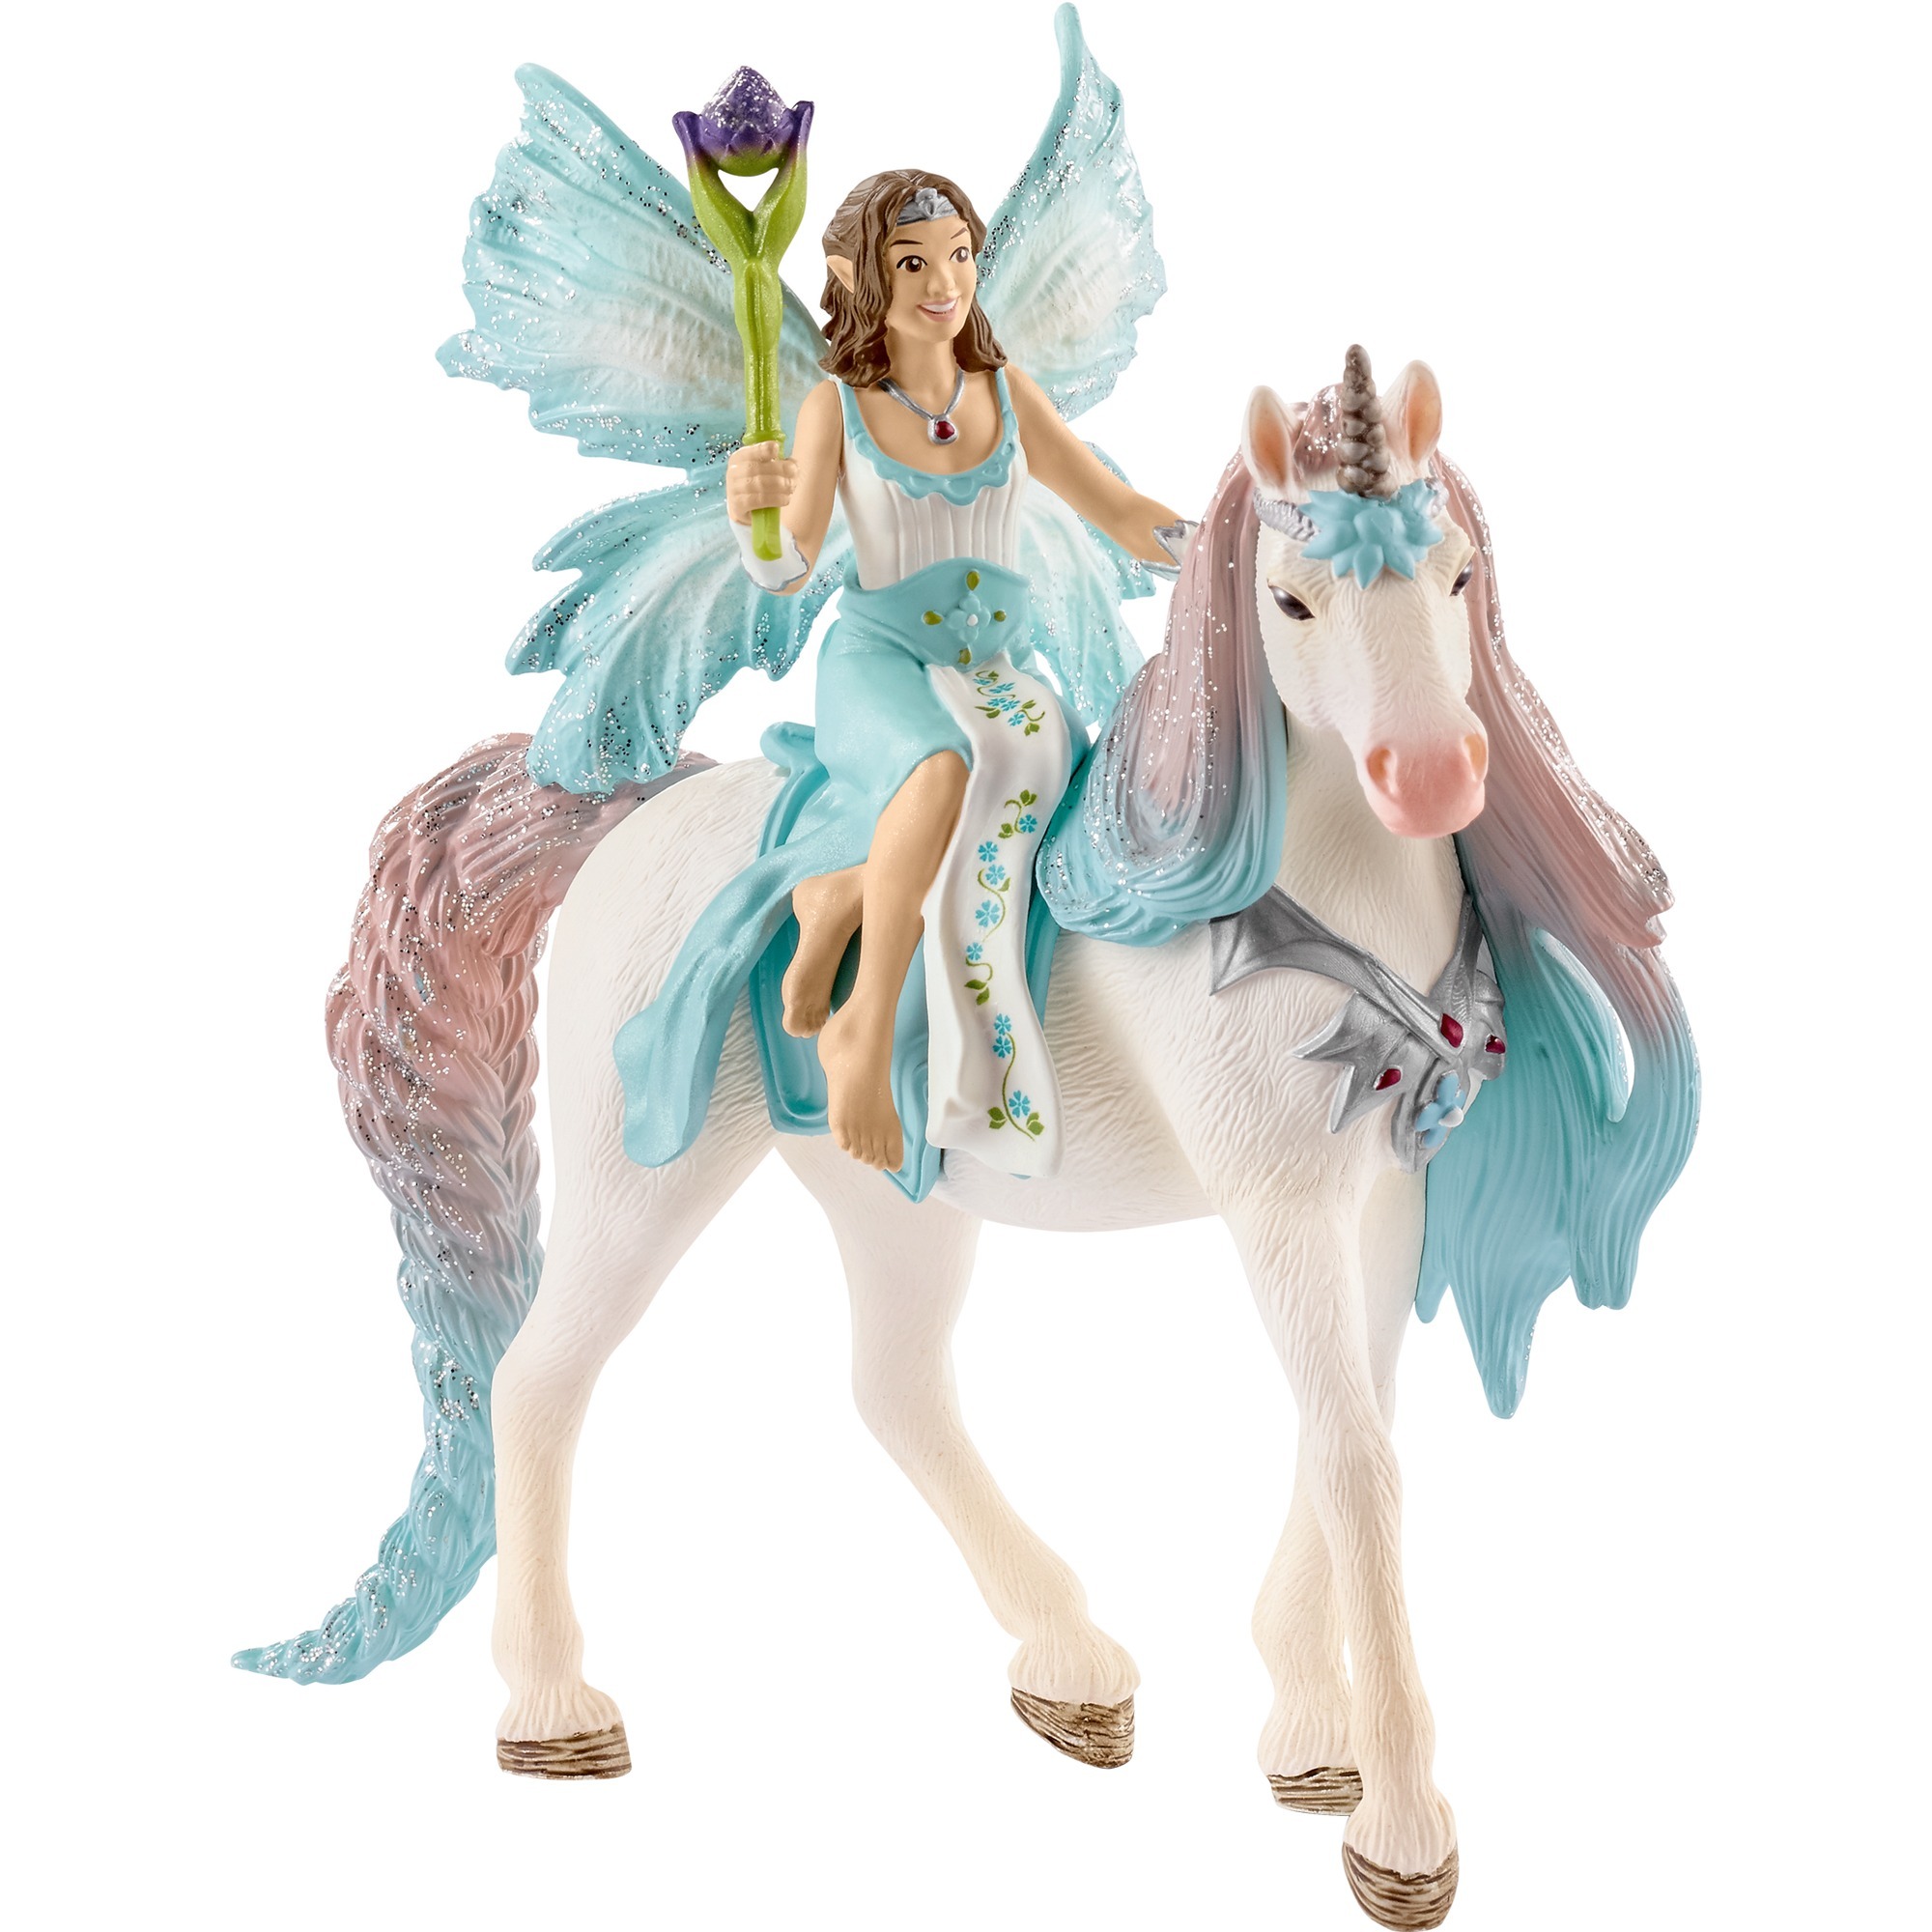 Image of Alternate - Bayala Eyela mit Prinzessinnen-Einhorn, Spielfigur online einkaufen bei Alternate